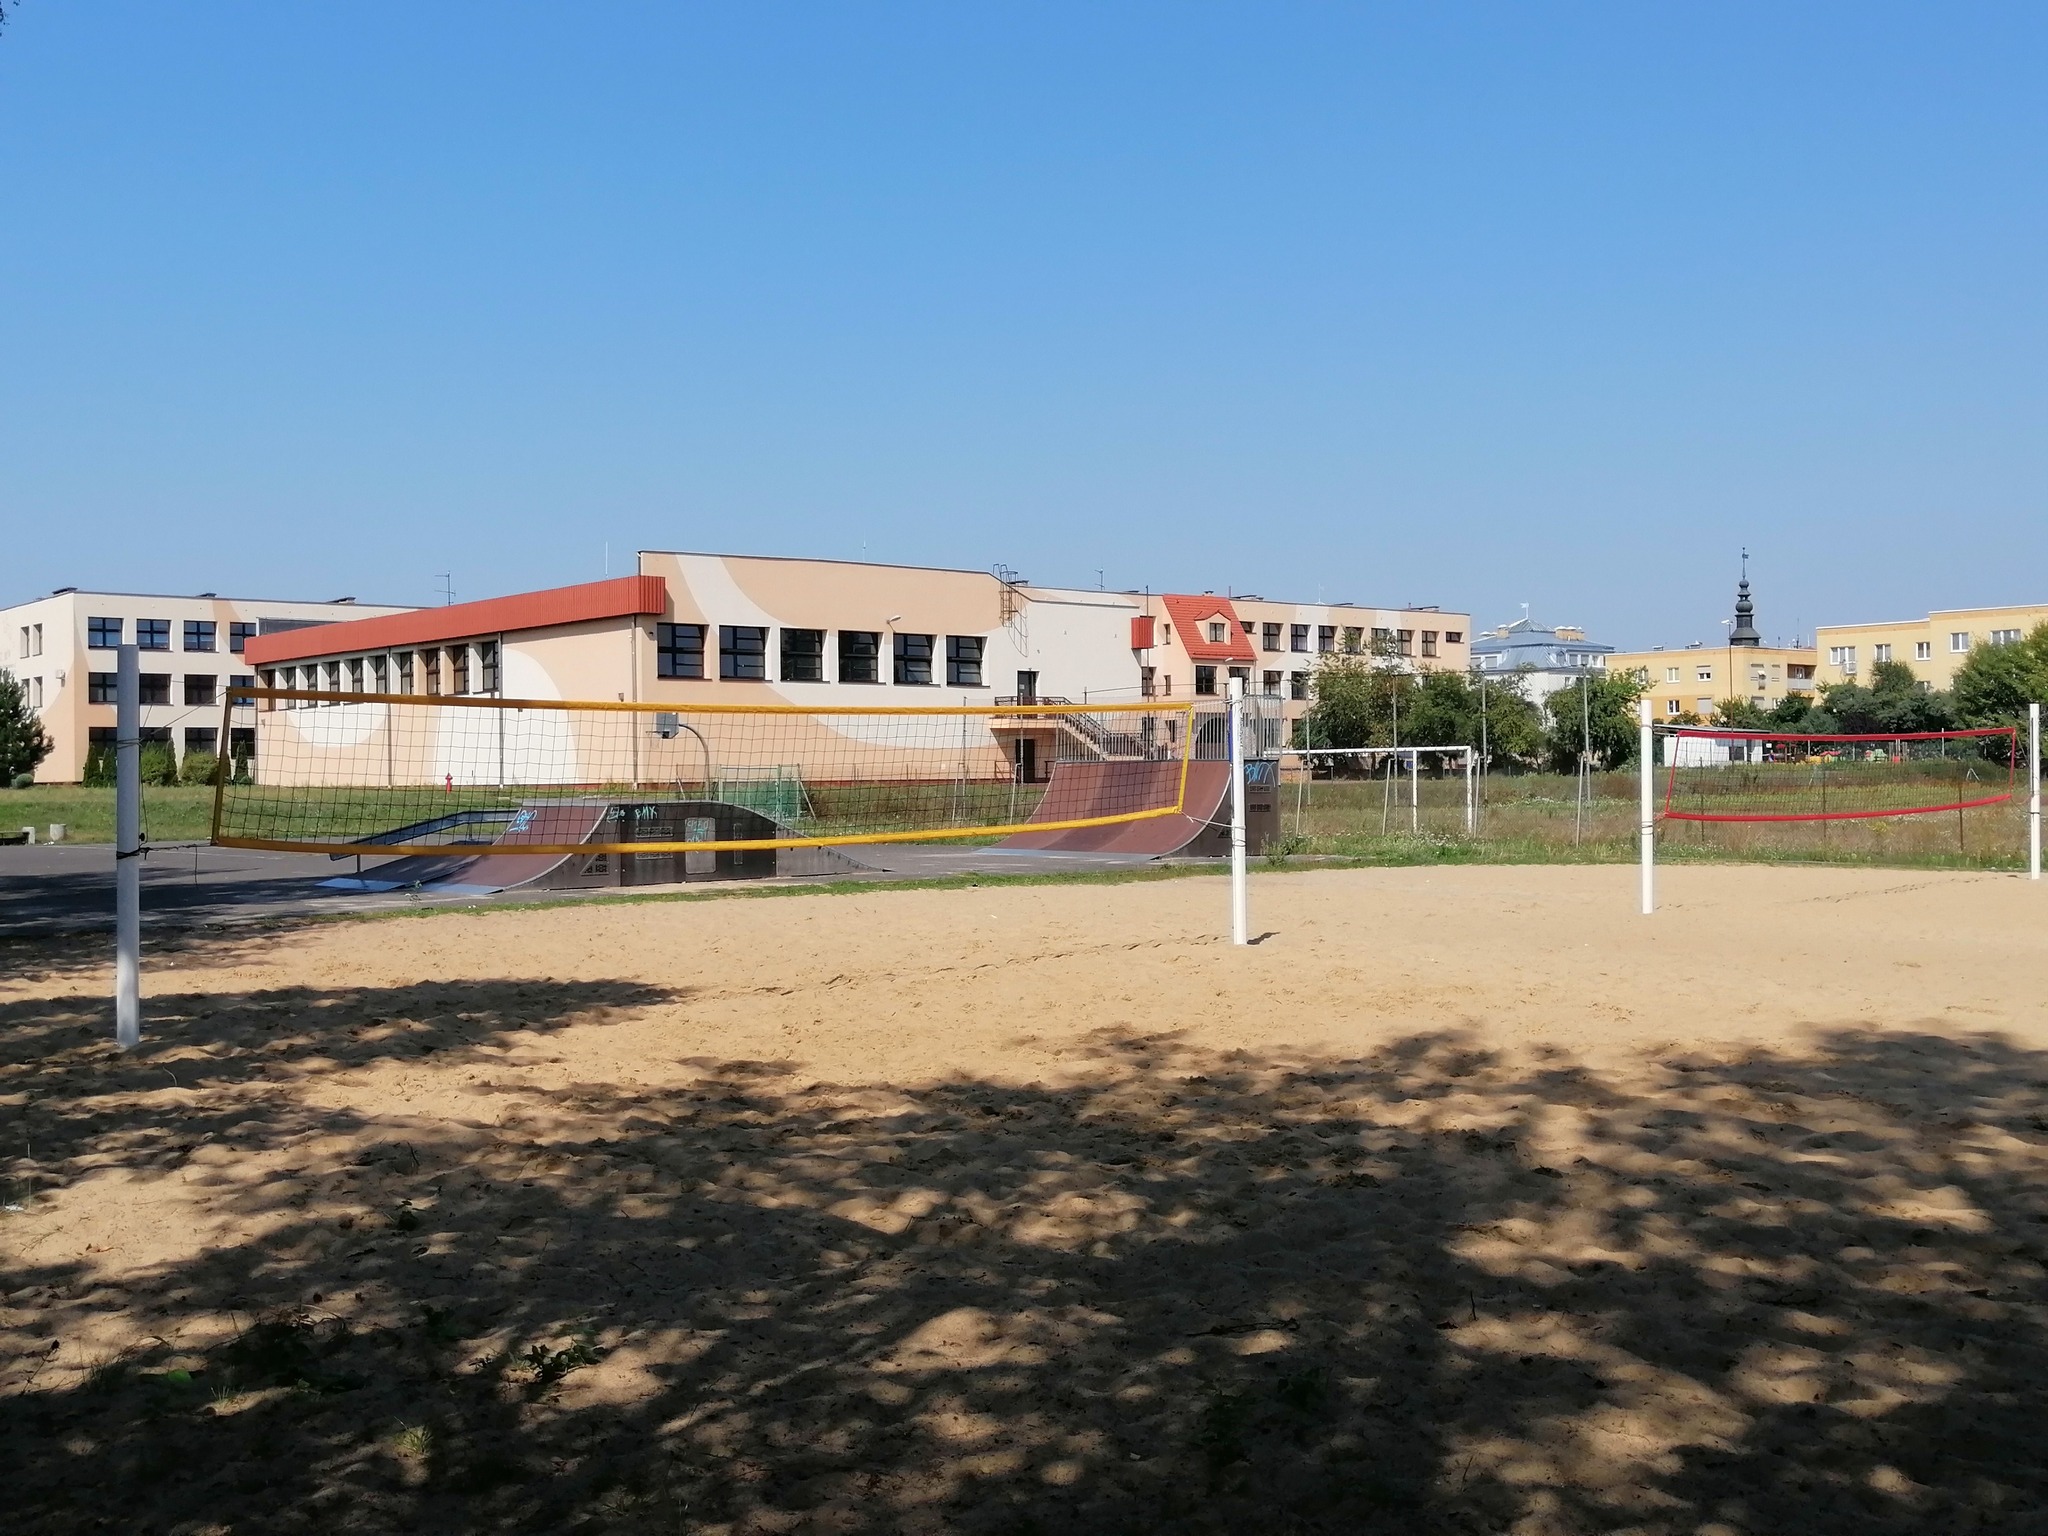 budynek szkoły z boiskiem do piłki siatkowej